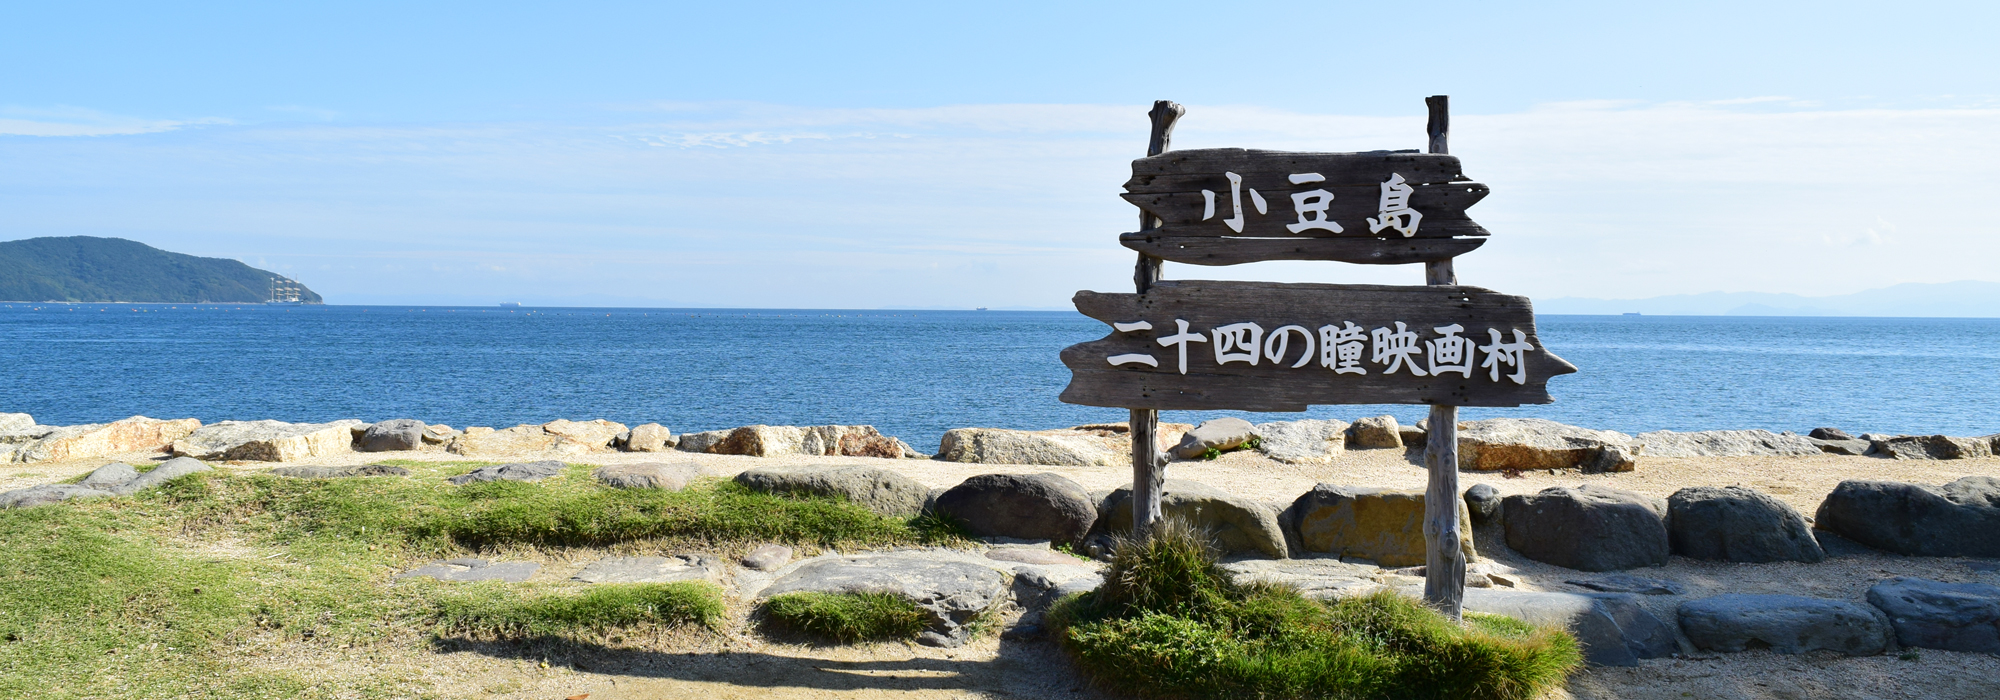 小豆島観光のおすすめスポット「二十四の瞳映画村」